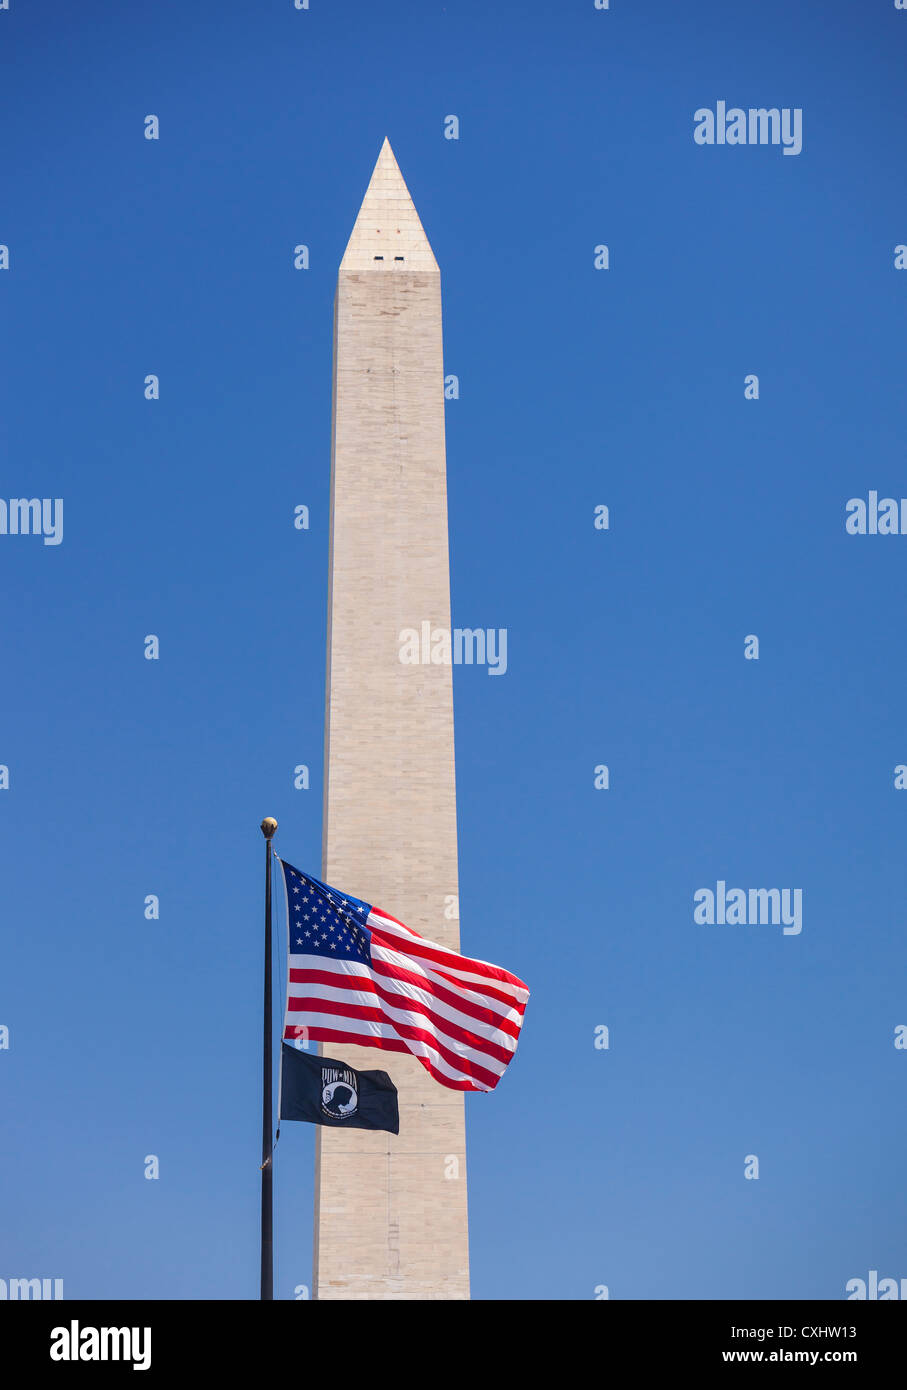 WASHINGTON, DC, USA - Washington Monument with US flag and POW MIA flag. Stock Photo